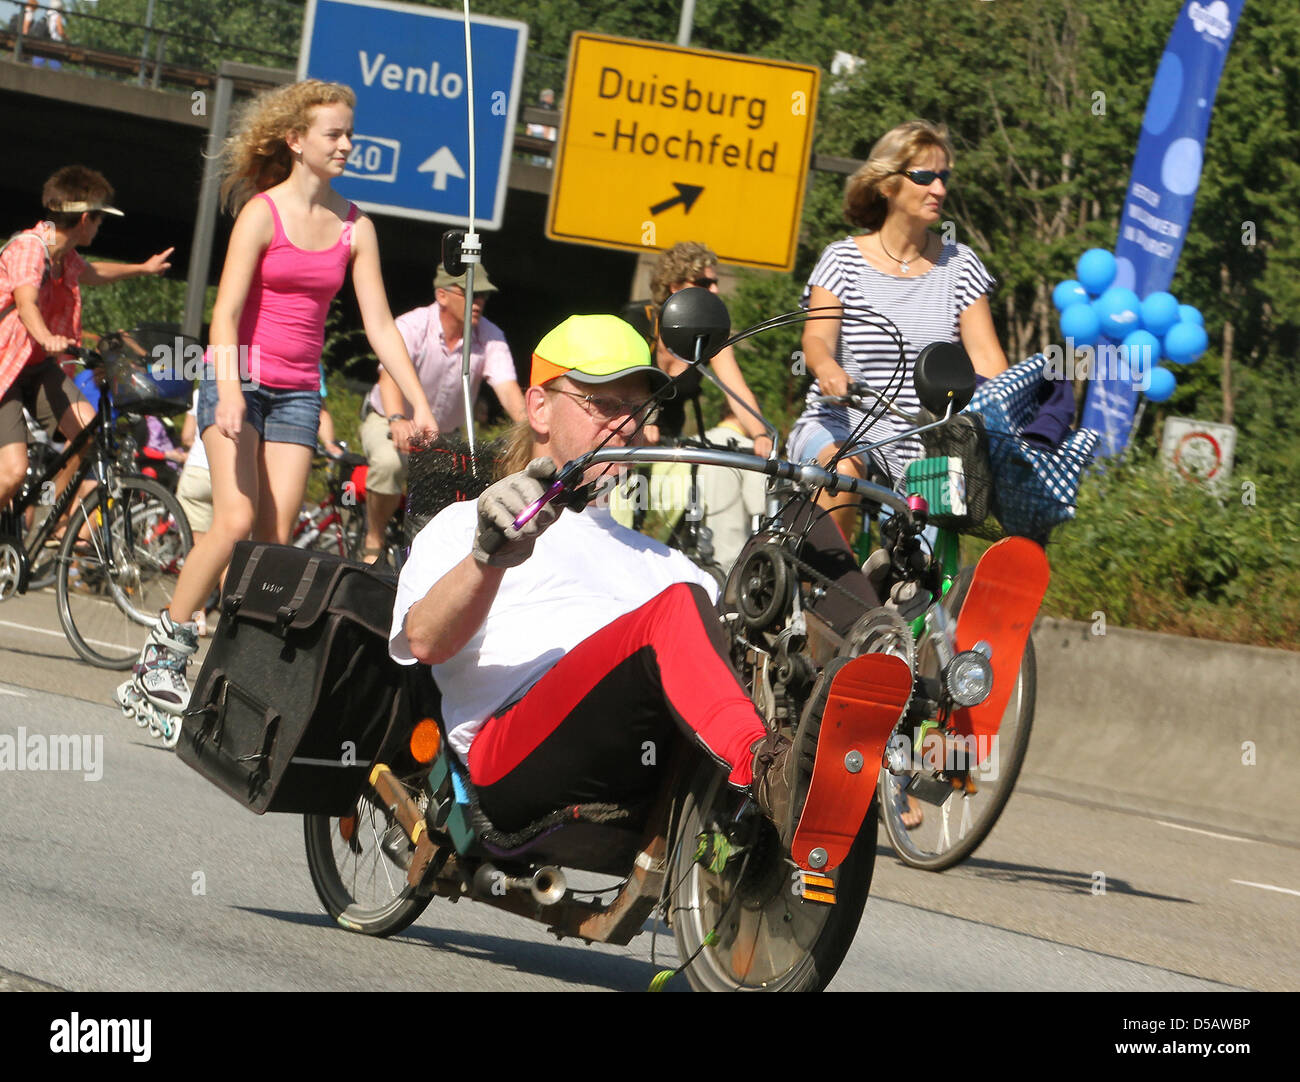 Mit den unterschiedlichsten Fahrrädern benutzen am Sonntag (18.07.2010) auf der Autobahn 40 in Höhe Duisburg während der Aktion Still-Leben die Menschen die Autobahn. Die Autobahn ist auf rund 65 chilometro für den Autoverkehr gesperrt, nur Fußgänger und Radfahrer dürfen die Straße benutzen. Auf einer Fahrseite kann gefahren werden, auf der anderen sind die unterschiedlichsten Grupp Foto Stock